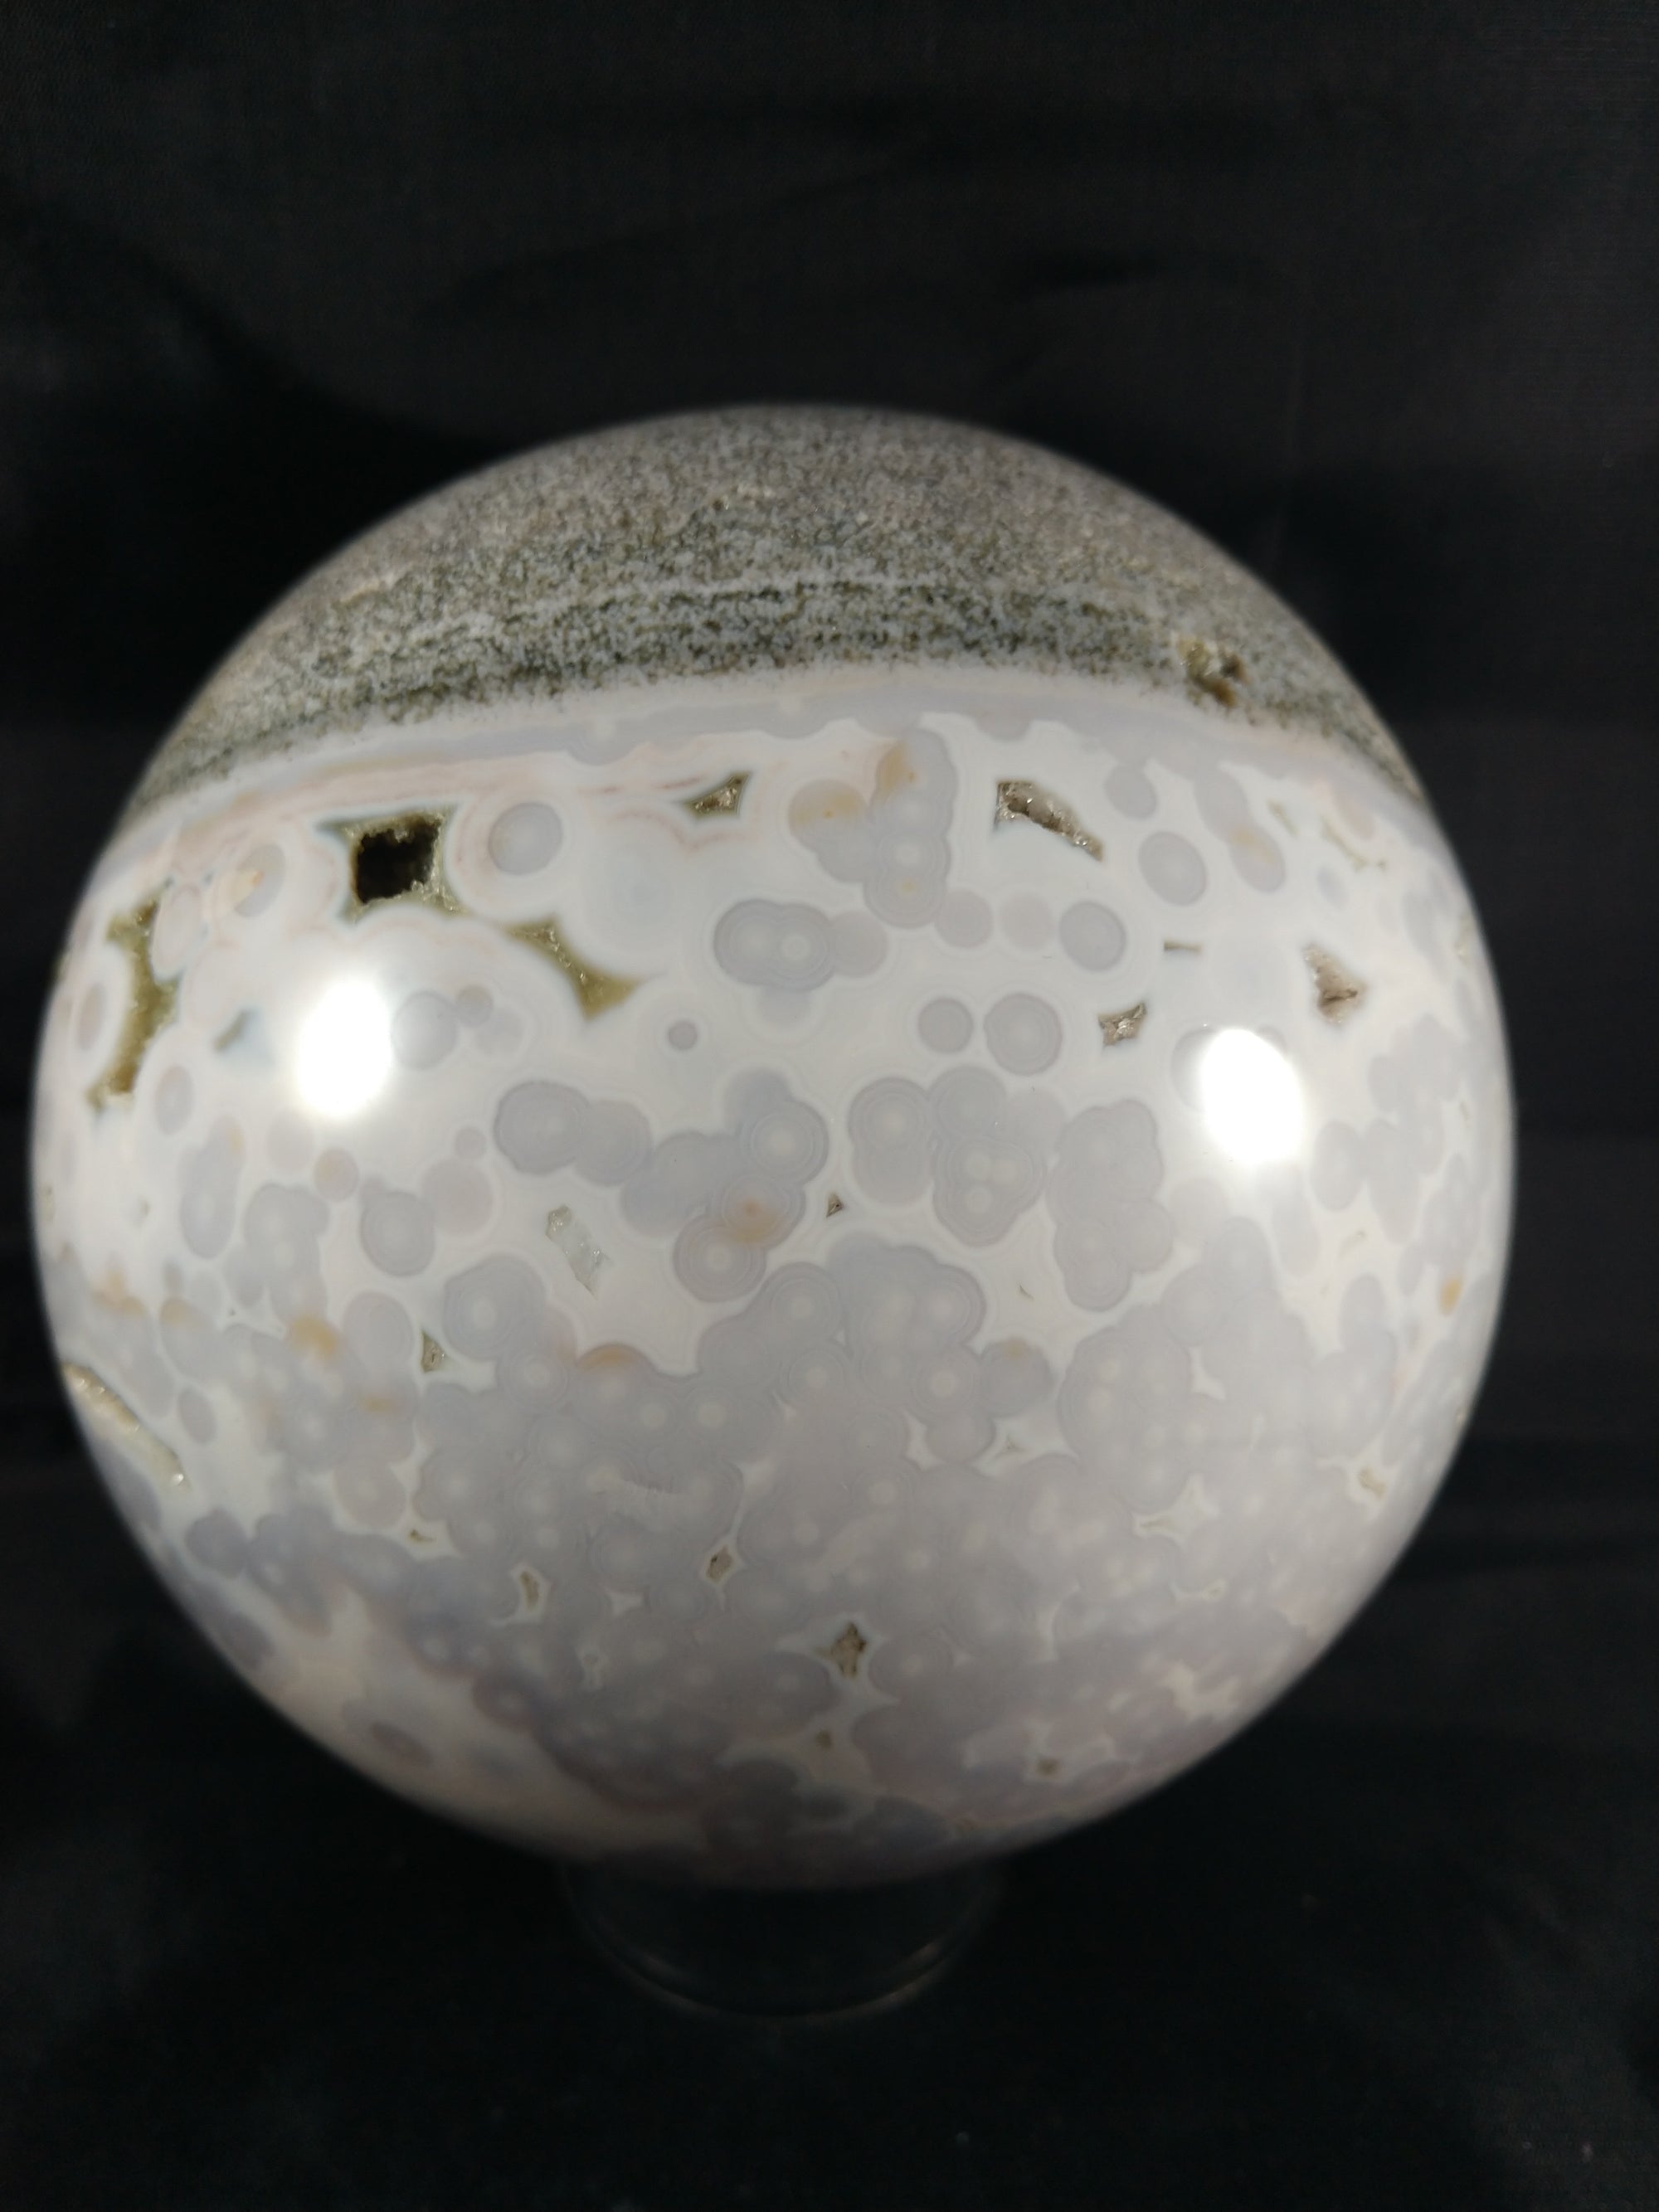 Ocean Jasper Sphere, 5.15 lbs